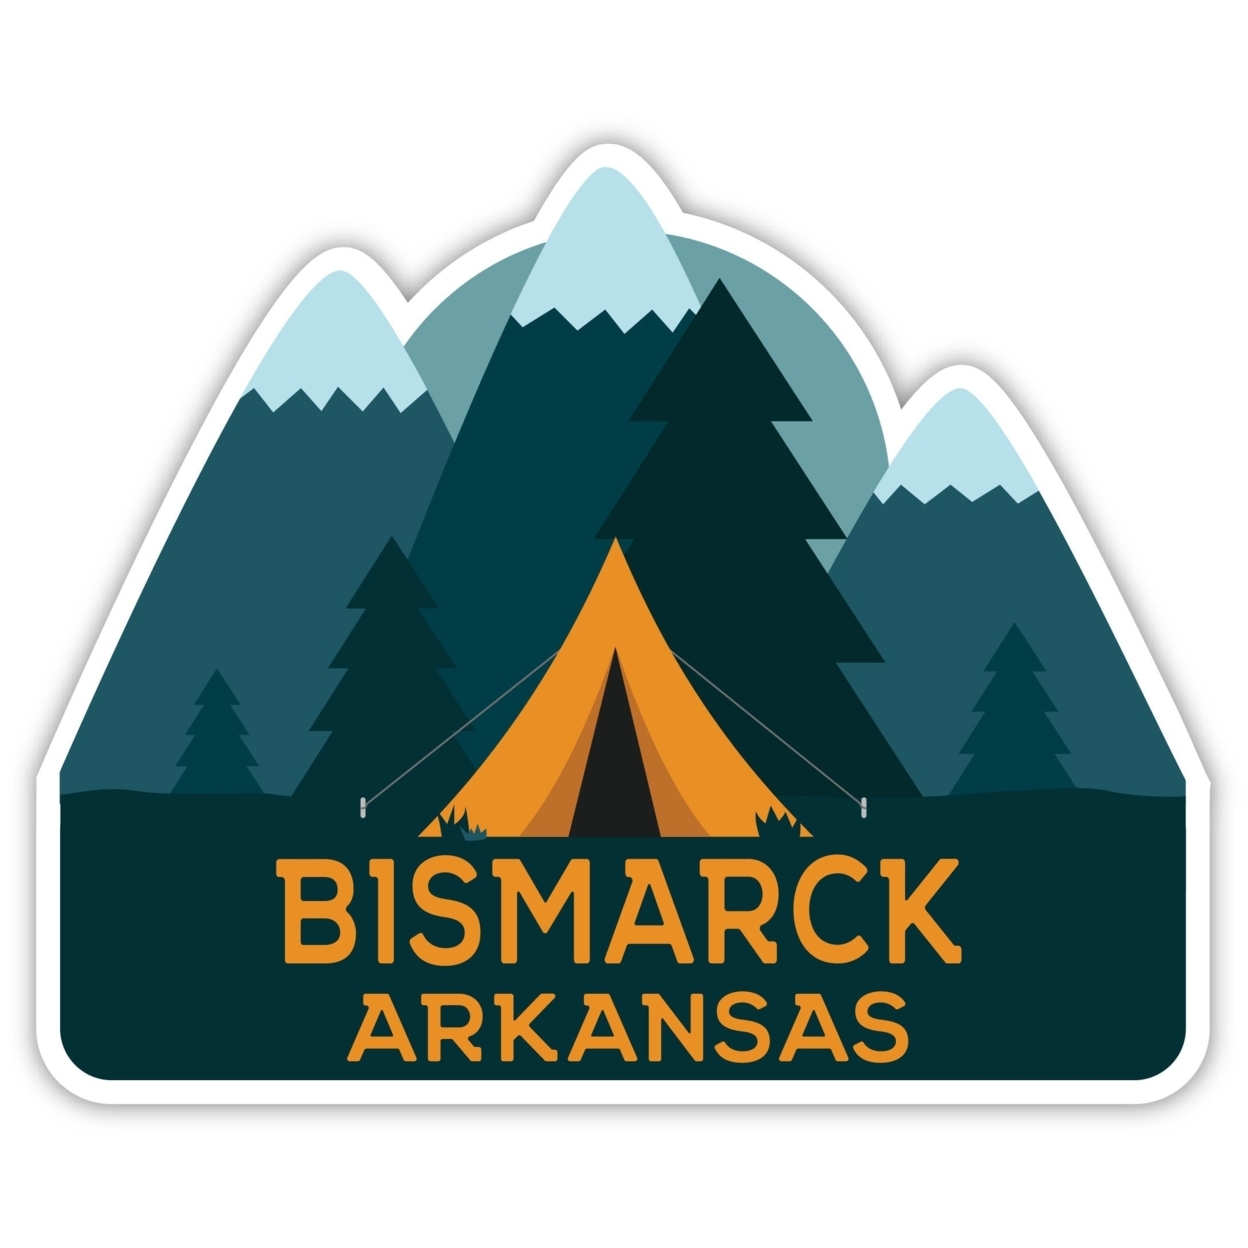 Bismarck Arkansas Souvenir Decorative Stickers (Choose Theme And Size) - Single Unit, 10-Inch, Tent